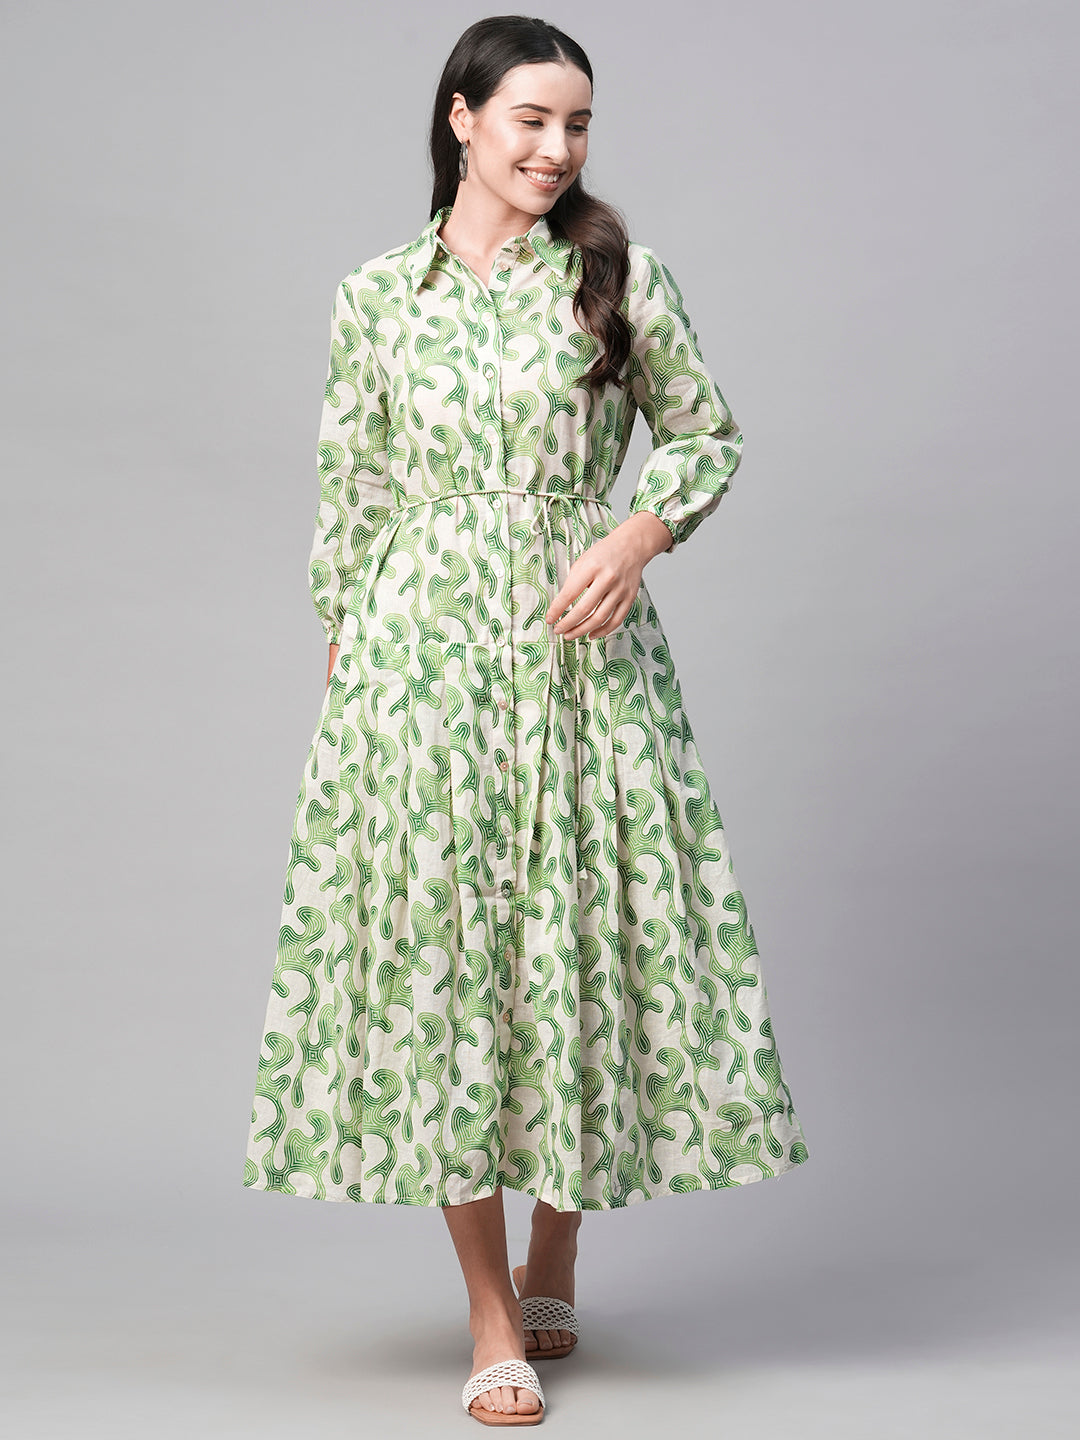 Cotton Dresses for Women - Saffron Threads